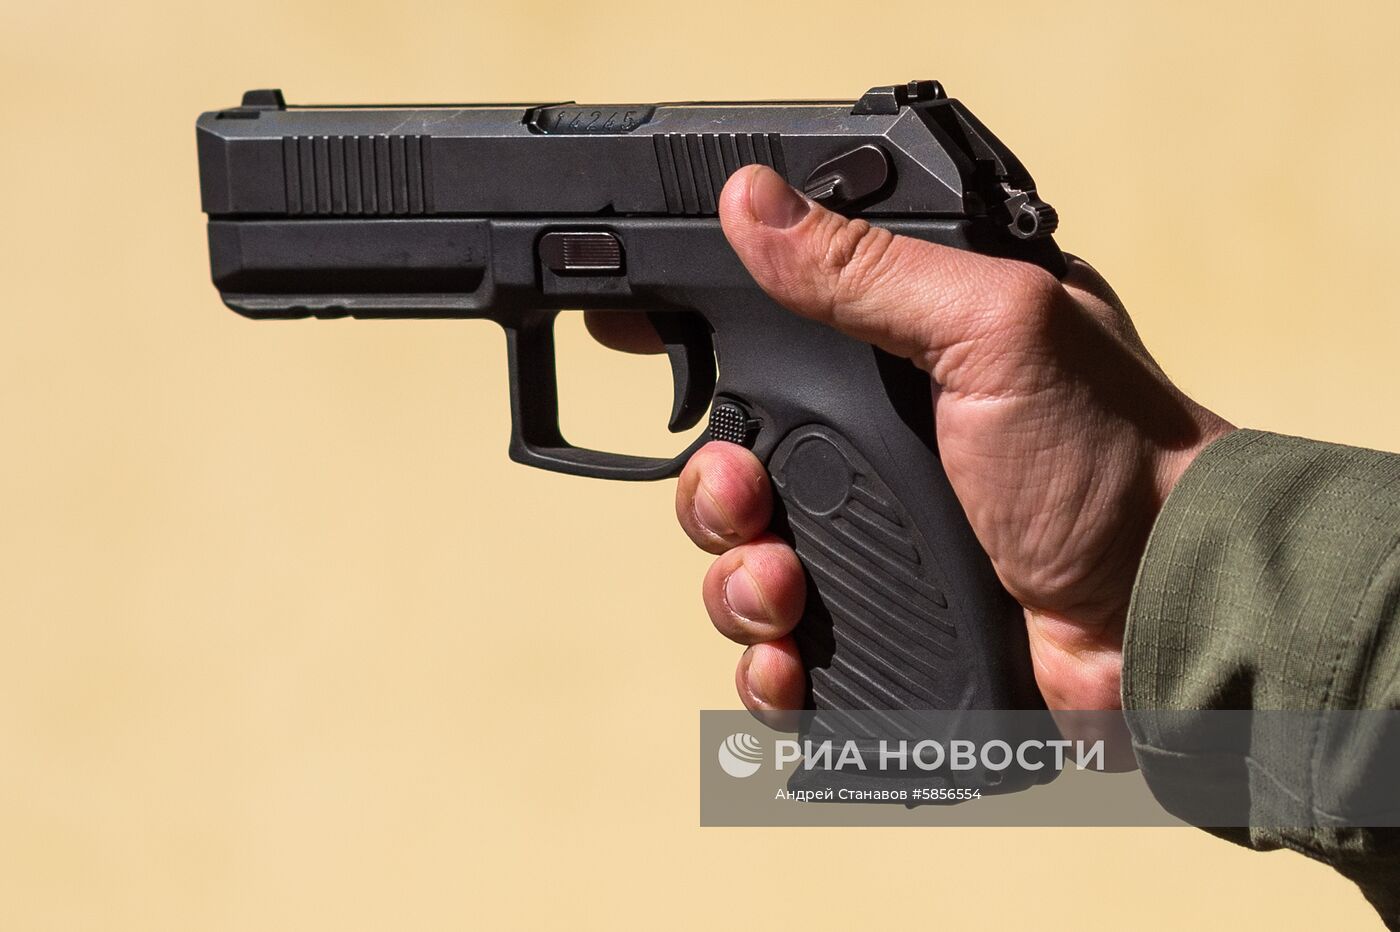 Пистолет "Удав" допущен к серийному производству